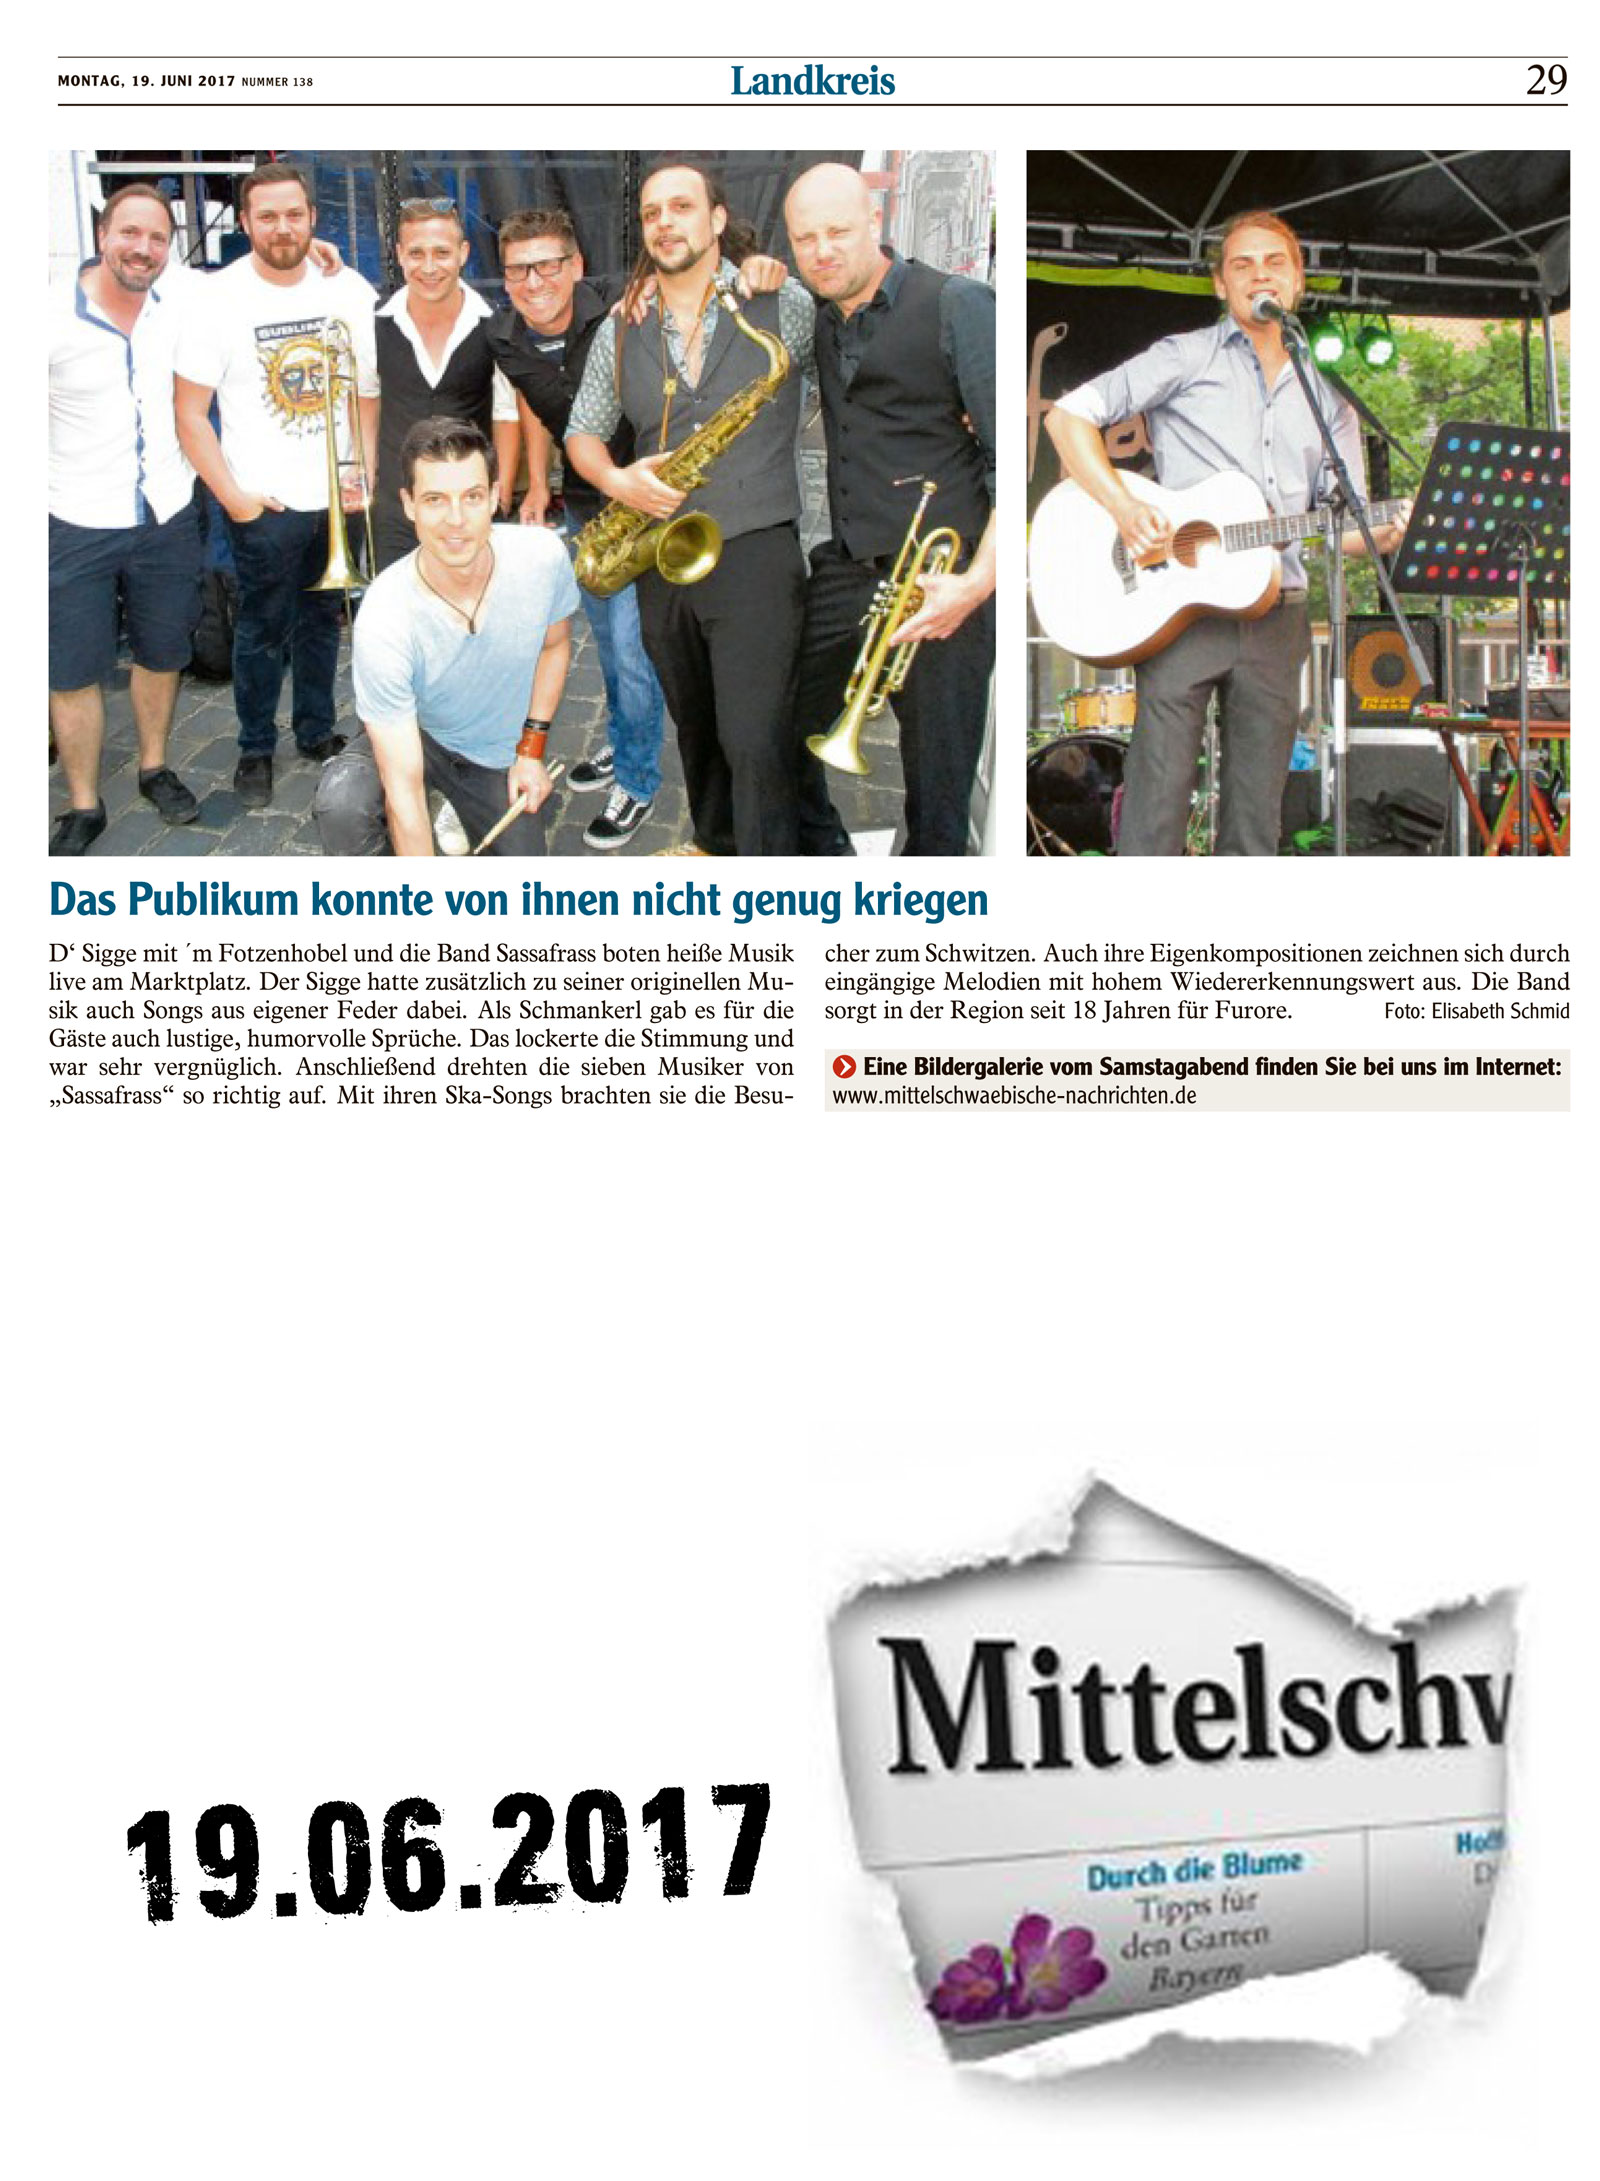 Sassafrass und Felix Böhm bei Live am Marktplatz 2017 06 19 Mittelschwaebische Nachrichten